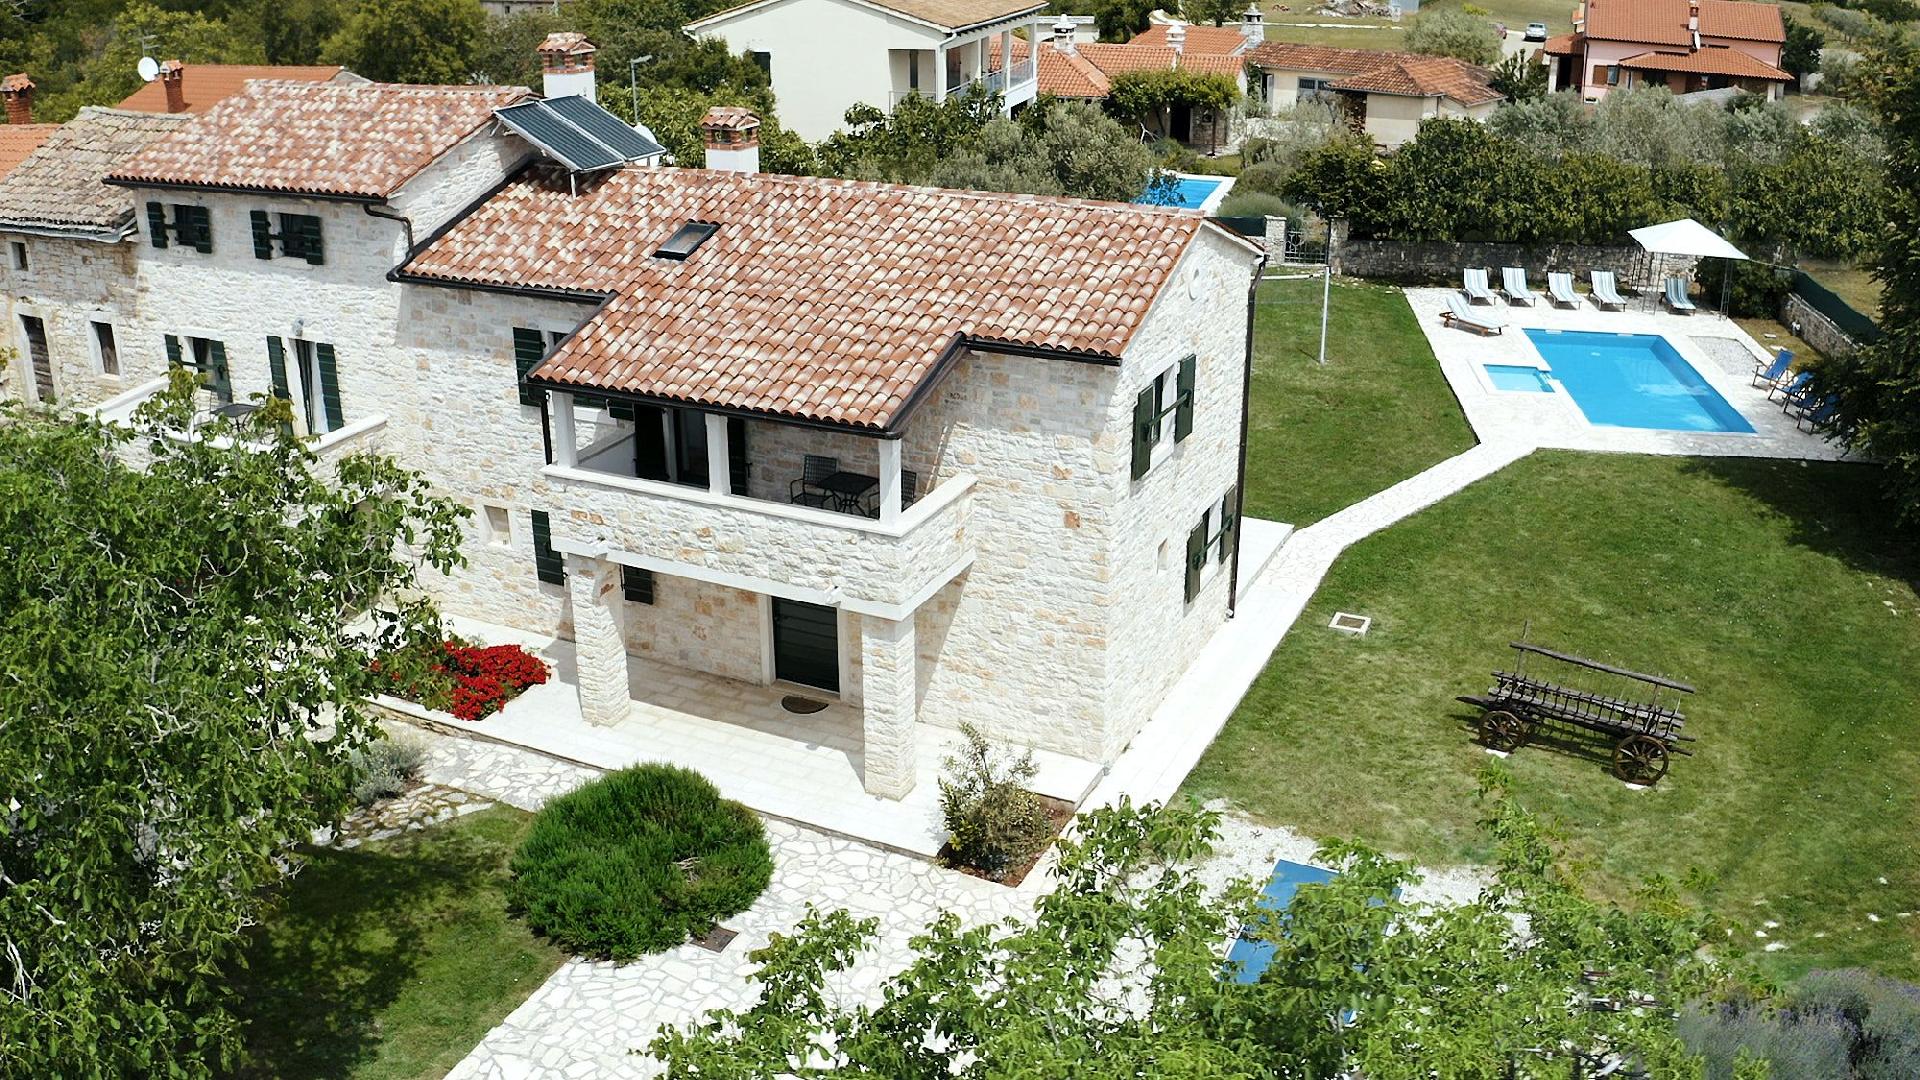 Ferienhaus mit Privatpool für 10 Personen  +  Ferienhaus in Kroatien